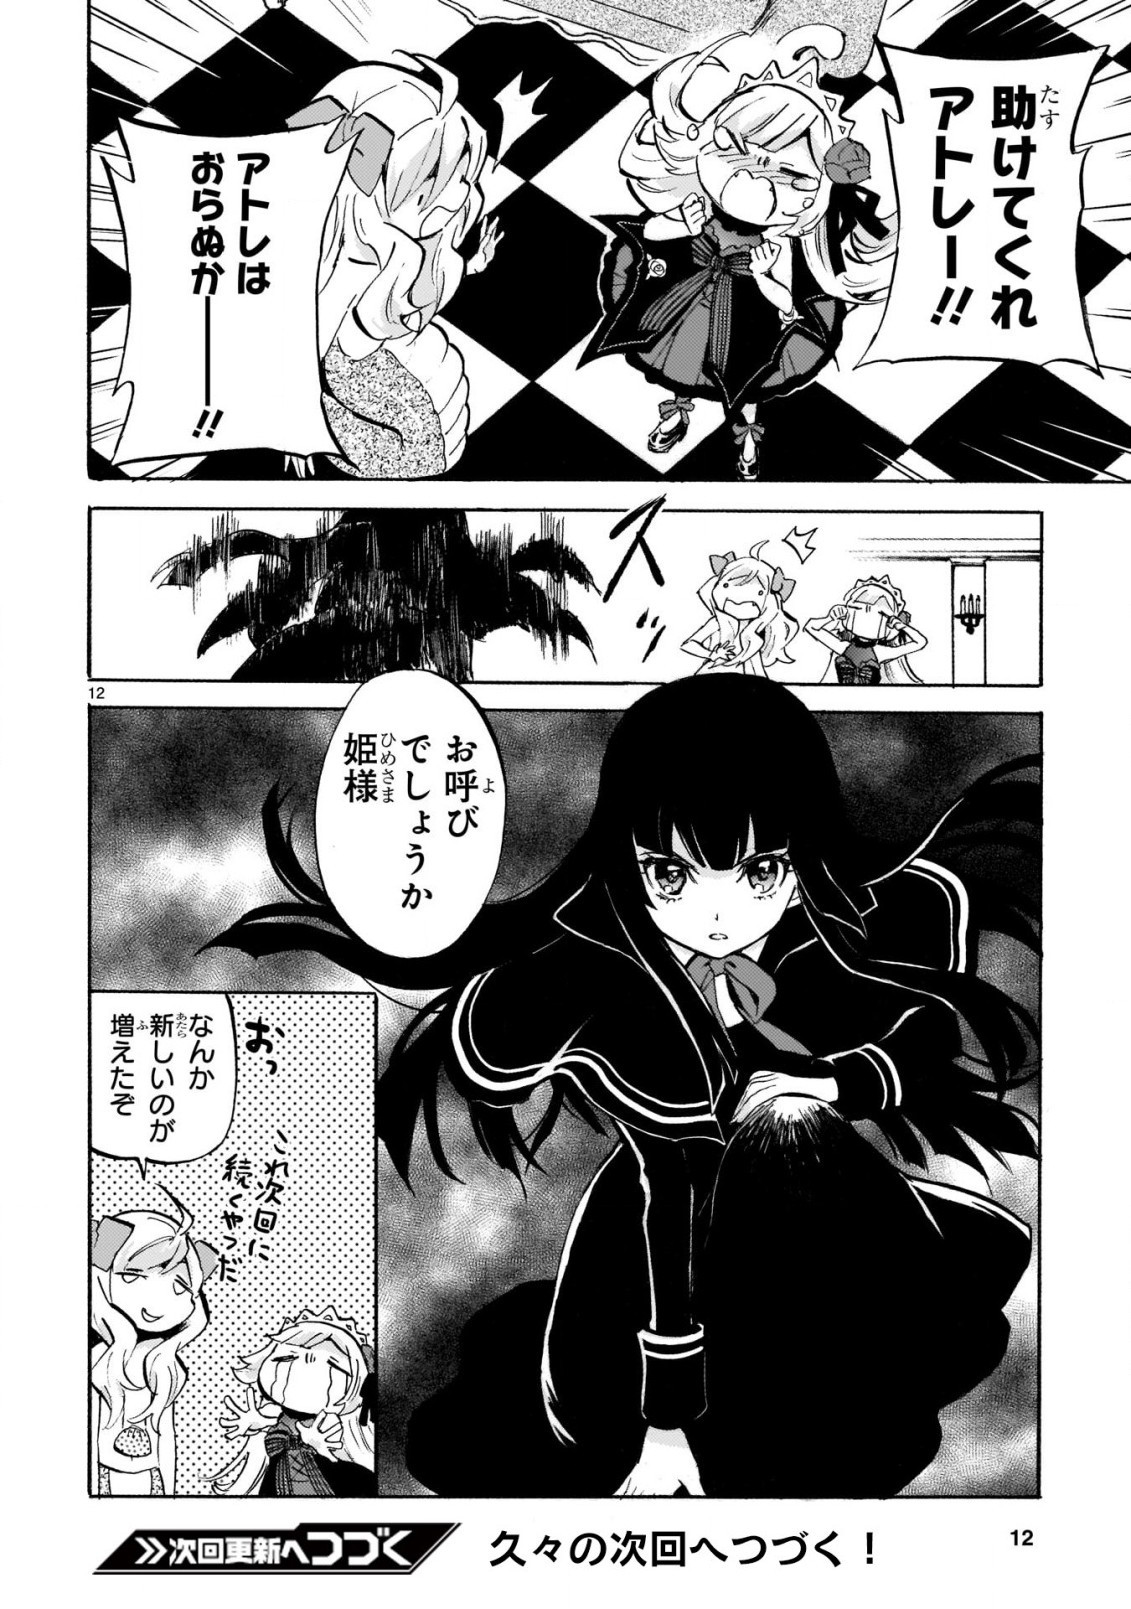 Jashin-chan Dropkick - Chapter 186 - Page 12